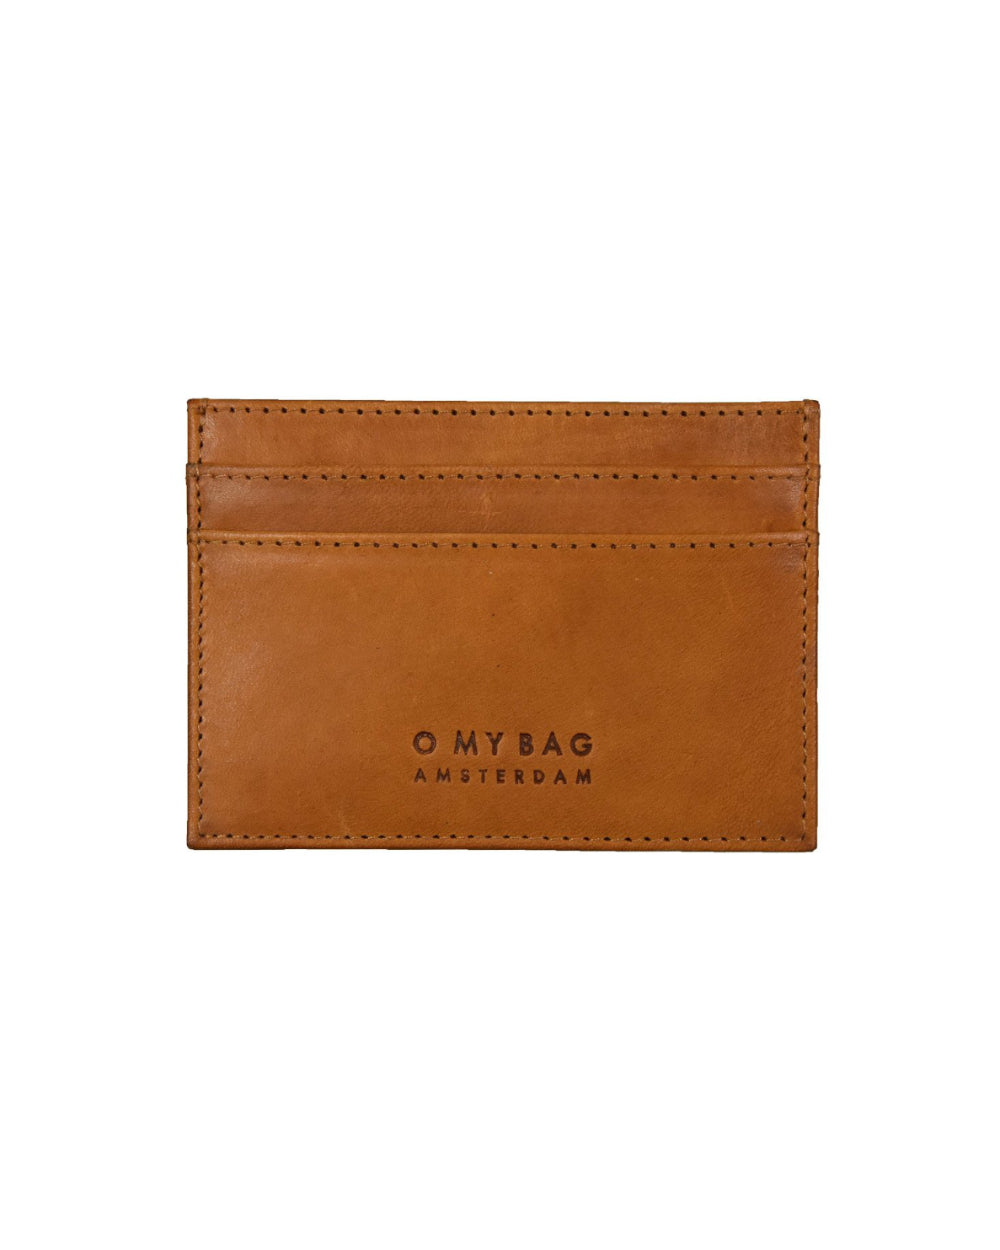 O my bag - MARK's Cardcase